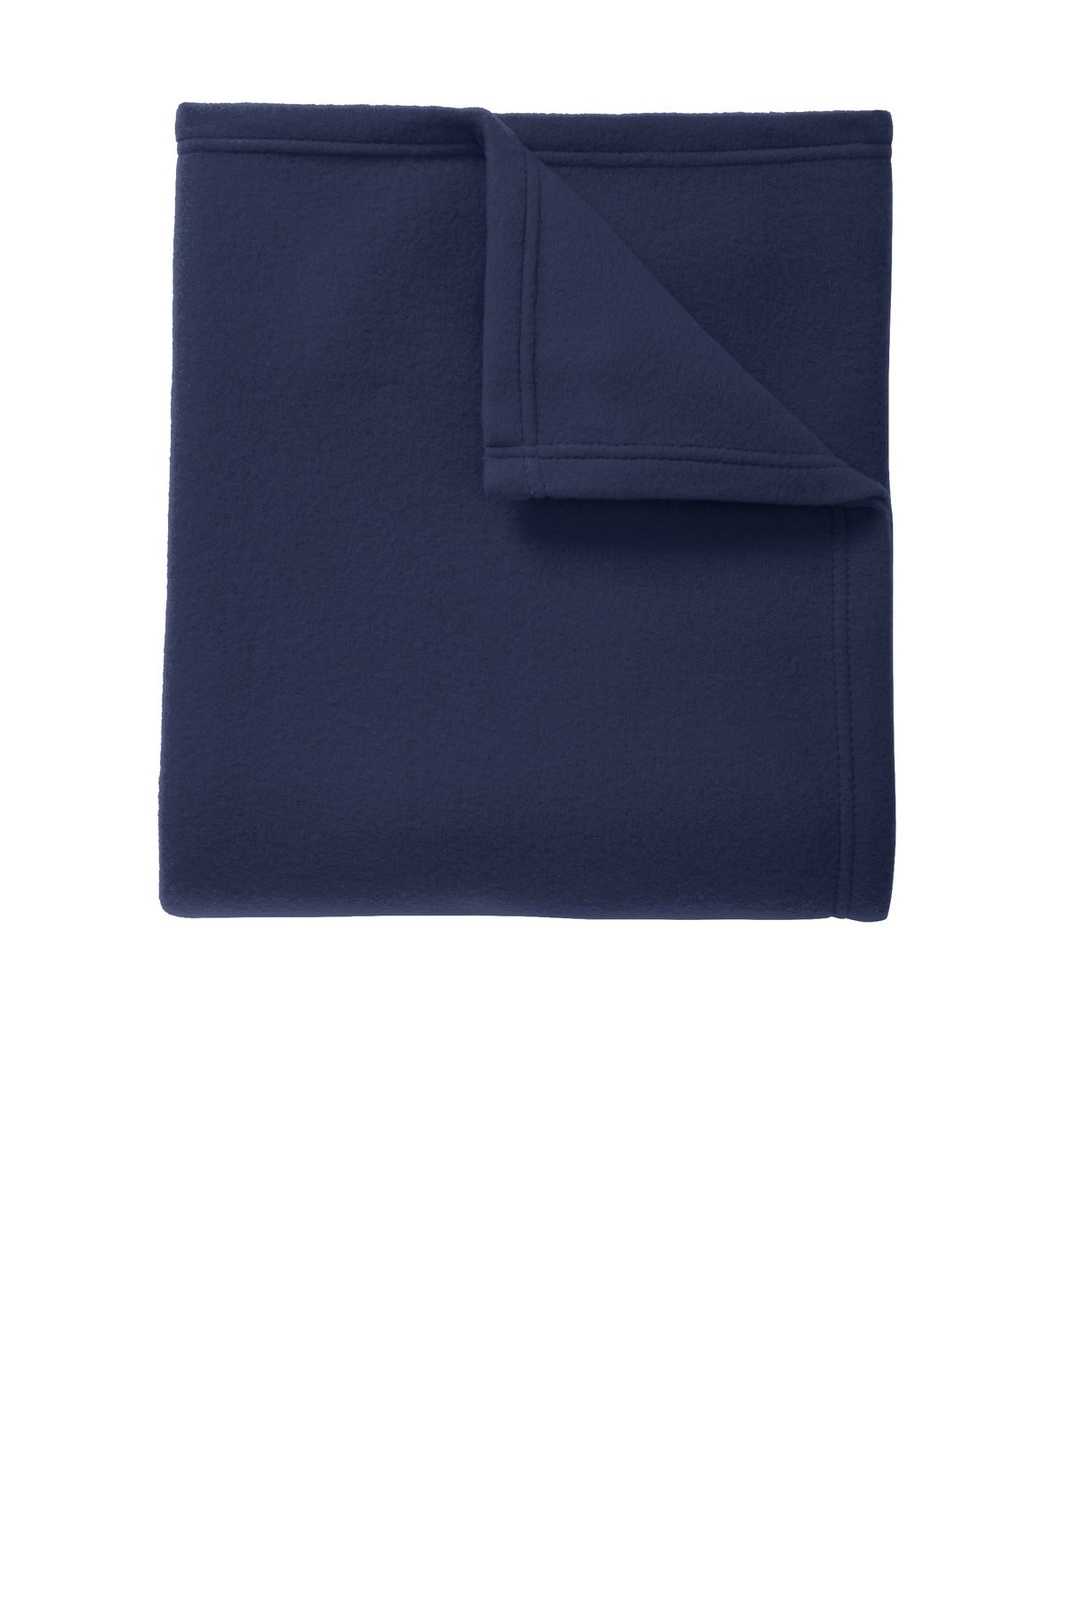 Port Authority BP60 Core Fleece Blanket - True Navy - HIT a Double - 1